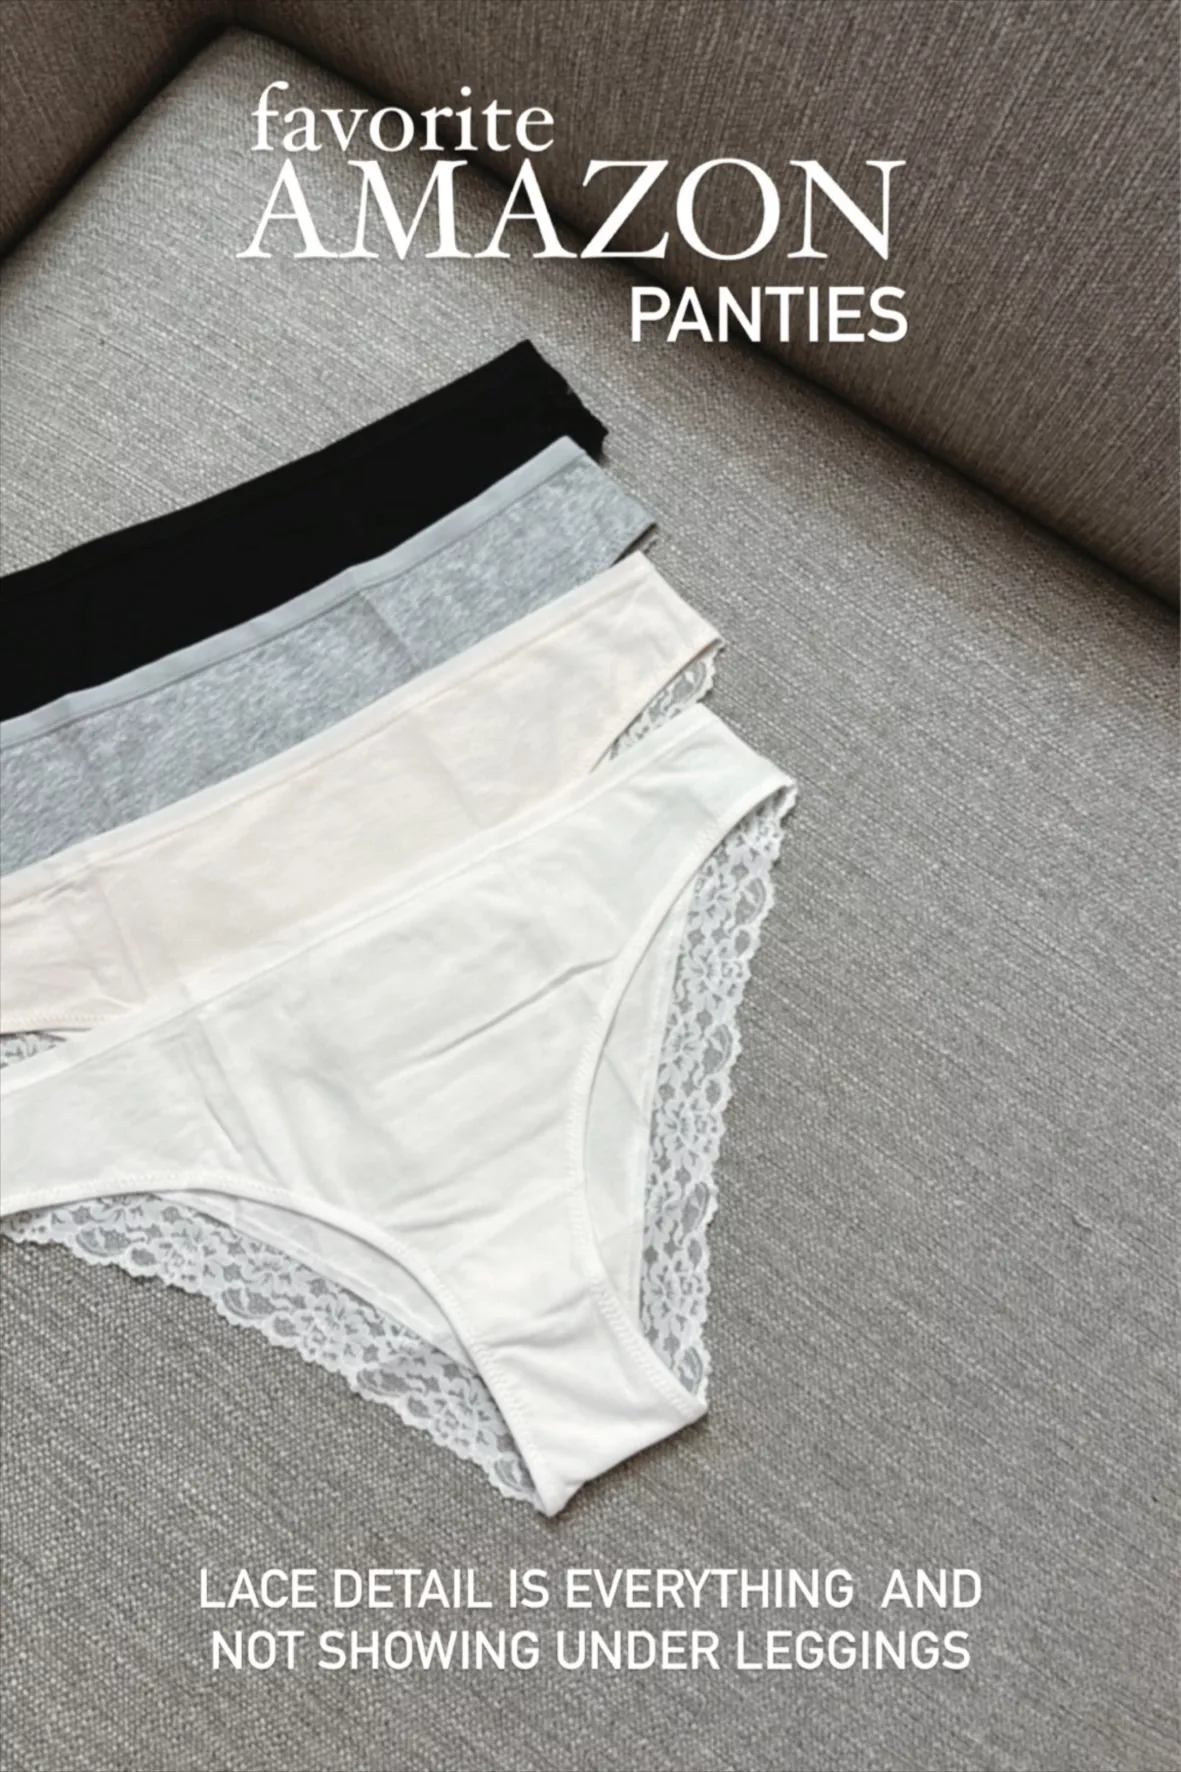 Ni2 Women's Cotton Panties (Pack of 12)